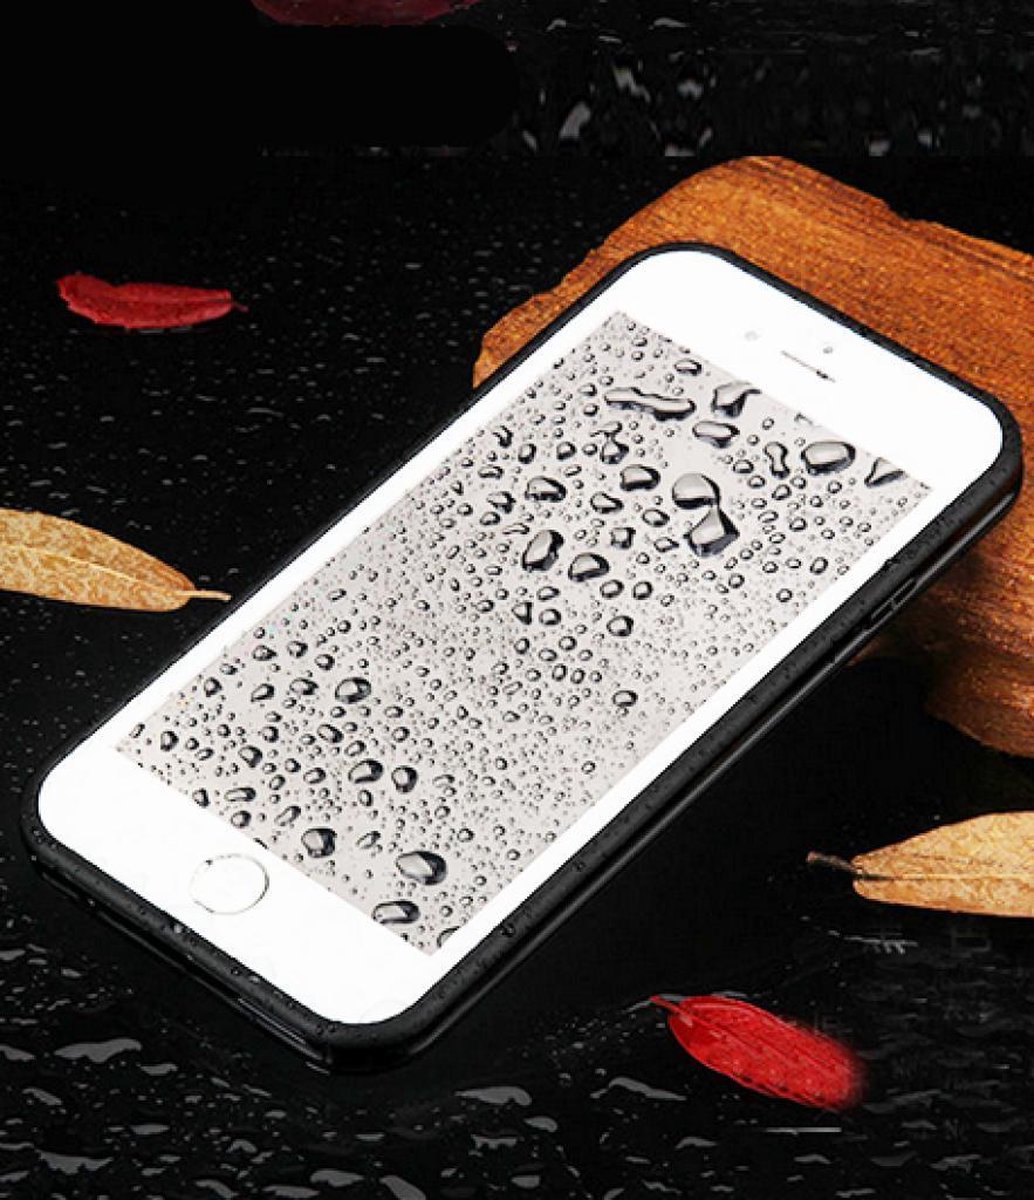 Waterproof hoesje case voor iPhone 6 4.7